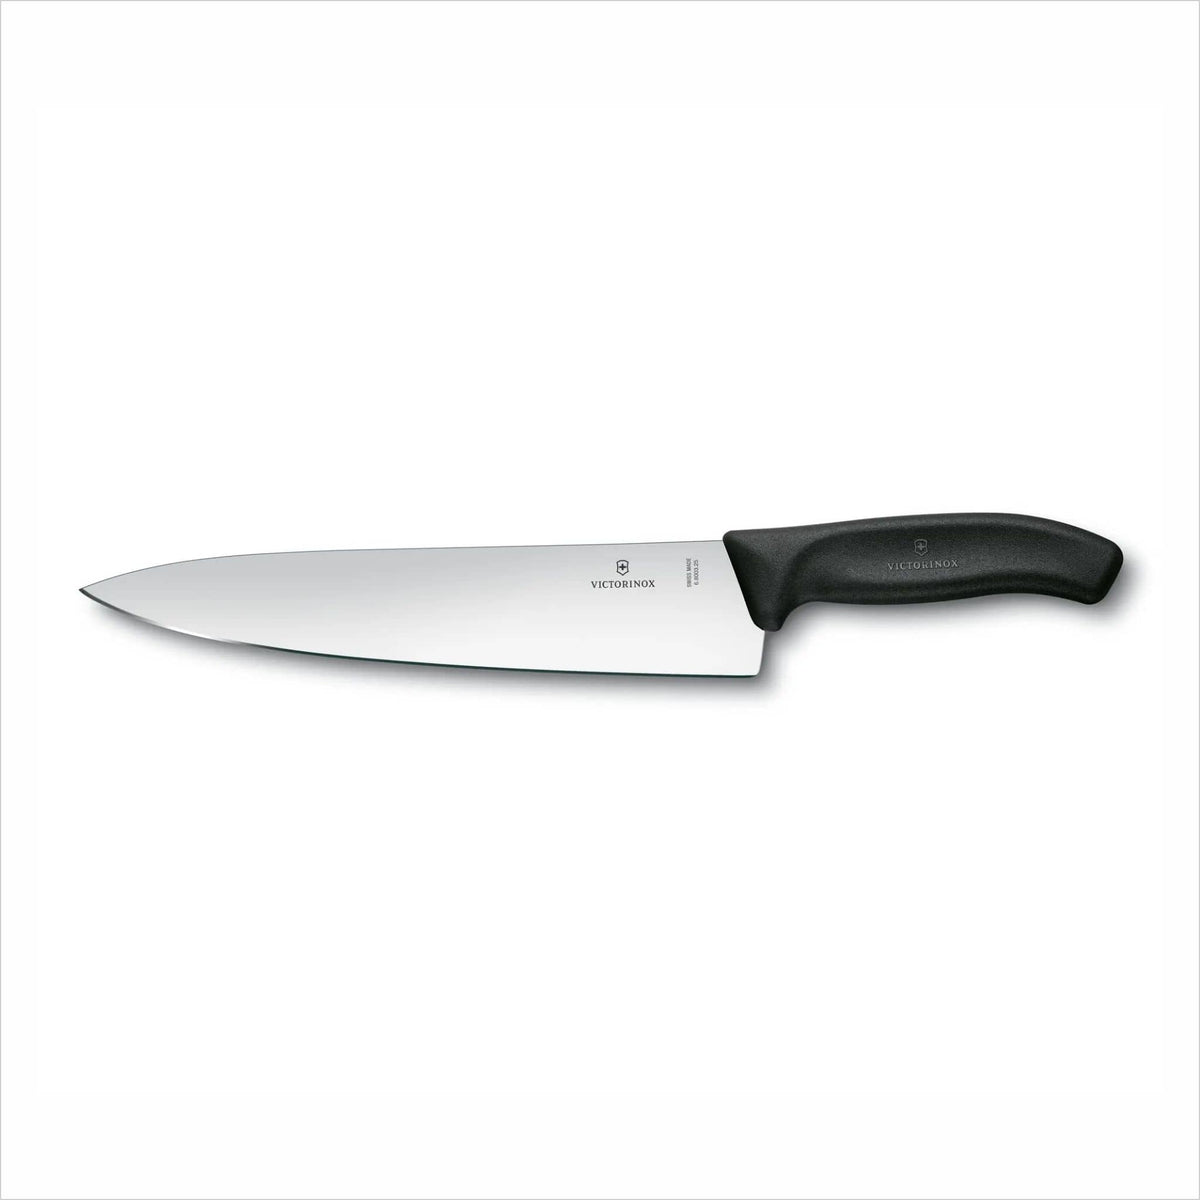 Couteau d'office dentelé 3 1/4 - SUISSE CLASSIQUE — Caprices de cuisine